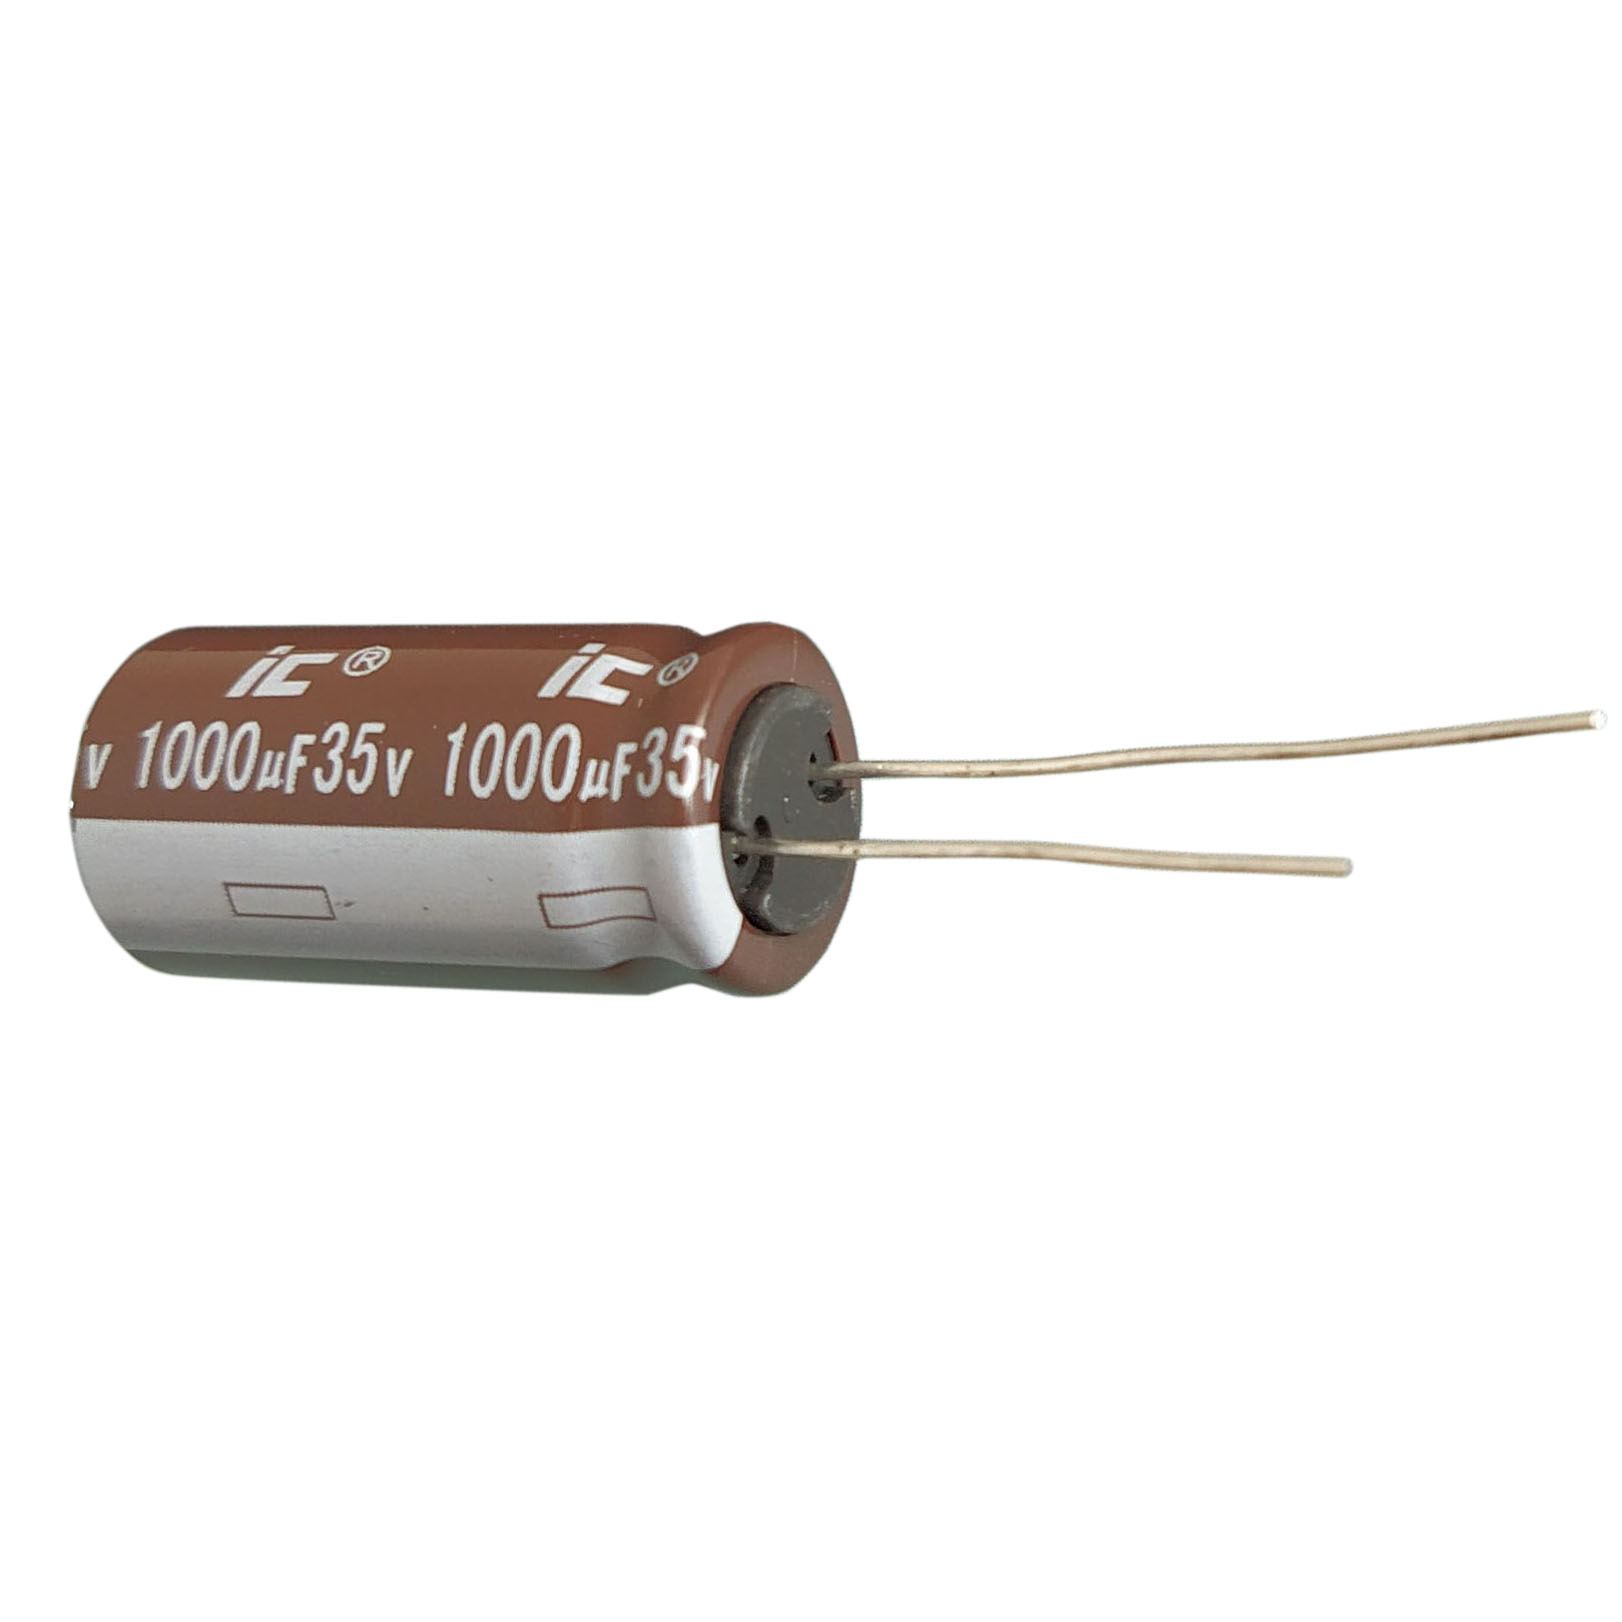 خازن الکترولیت 1000 میکروفاراد مدل IC-1000µF35V بسته 7 عددی